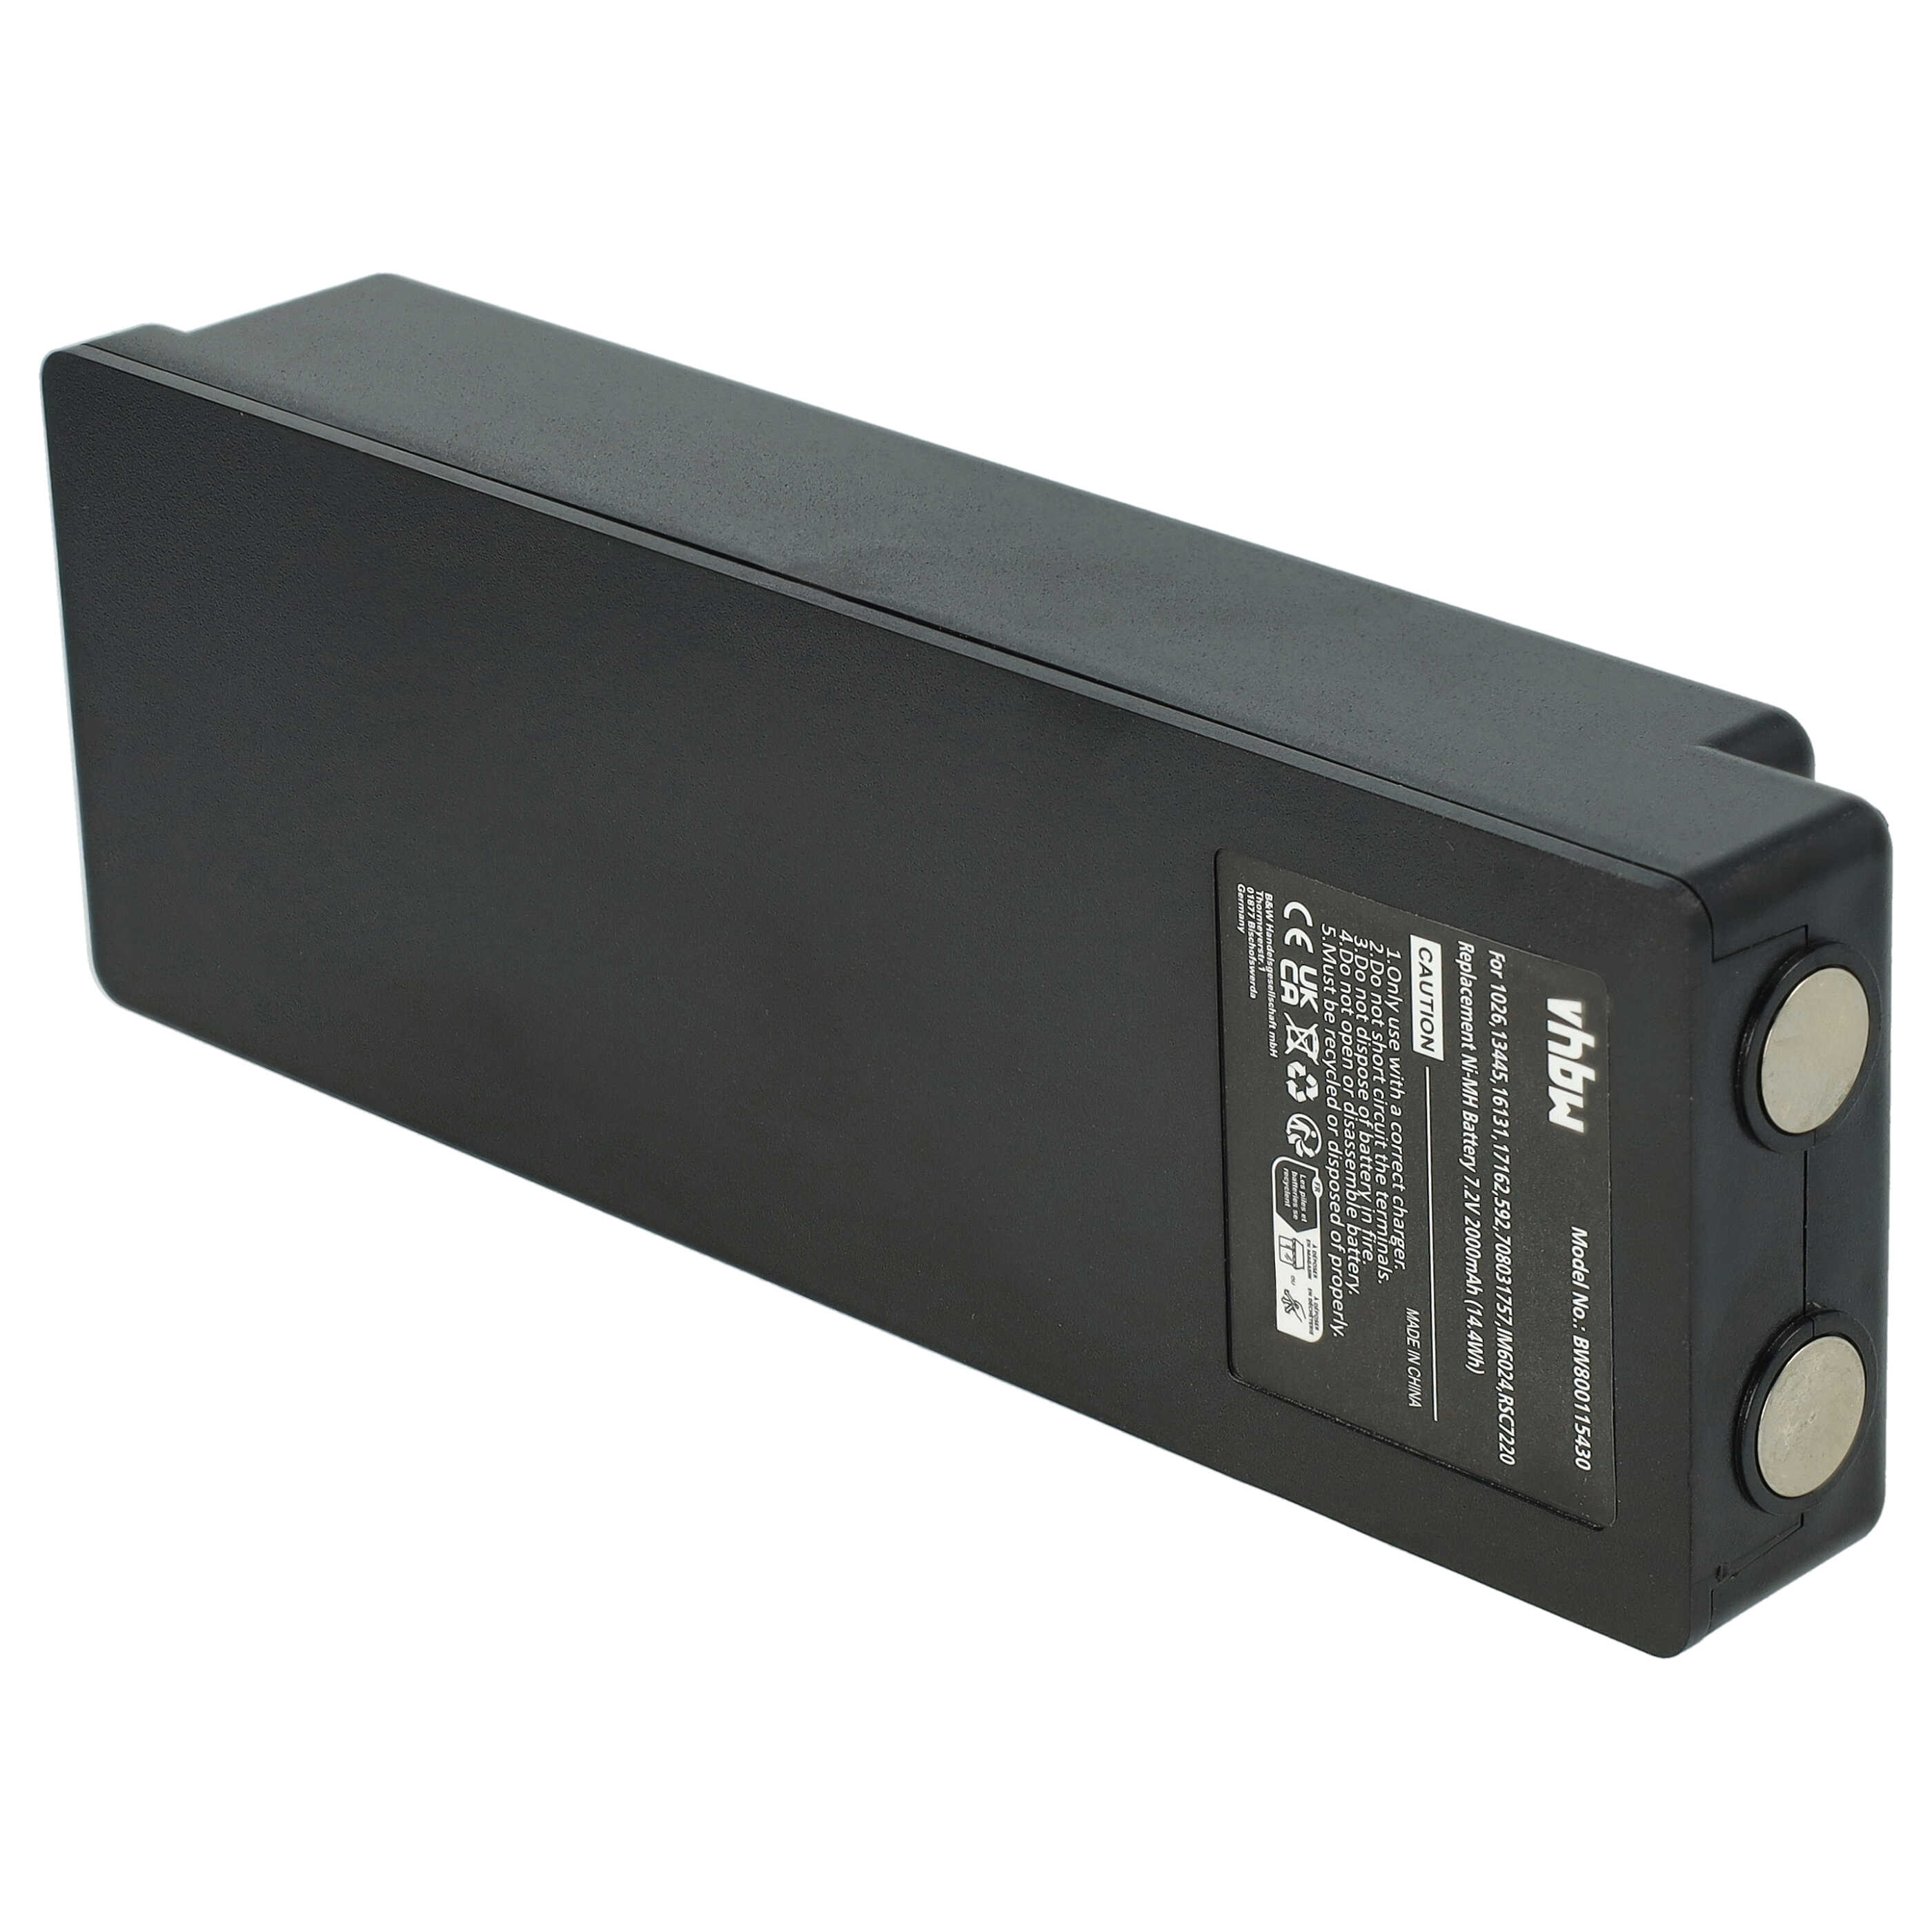 Batterie pour Palfinger / Scanreco 590, 592, RC400 pour télécomande industrielle - 2000mAh 7,2V NiMH